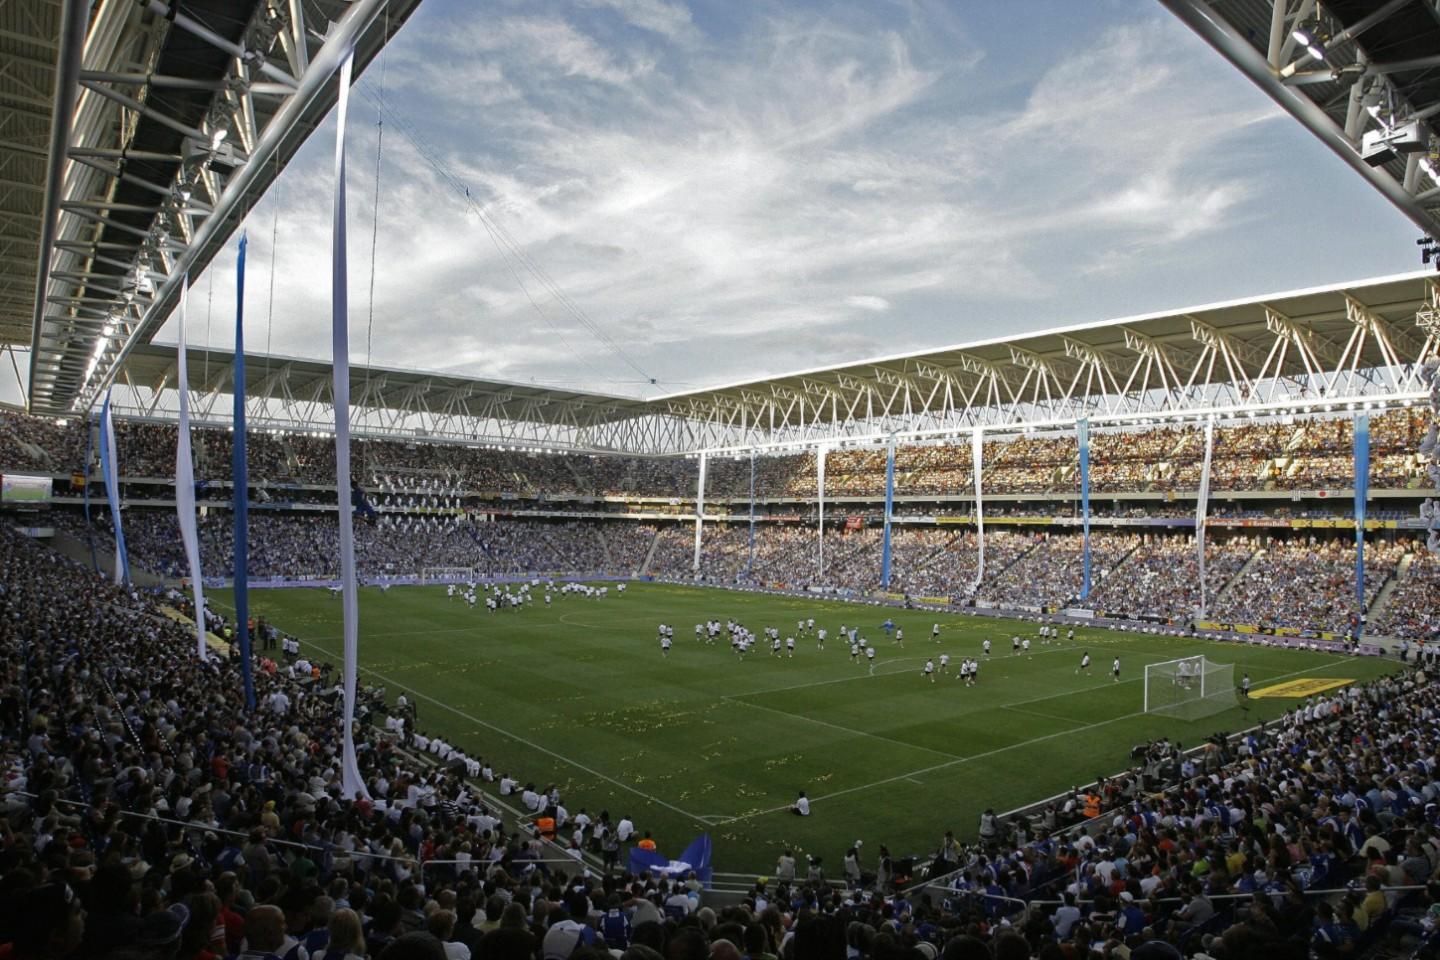 Espanyol Tickets | Buy or Sell Tickets for Espanyol 2020 Schedule - viagogo1440 x 960